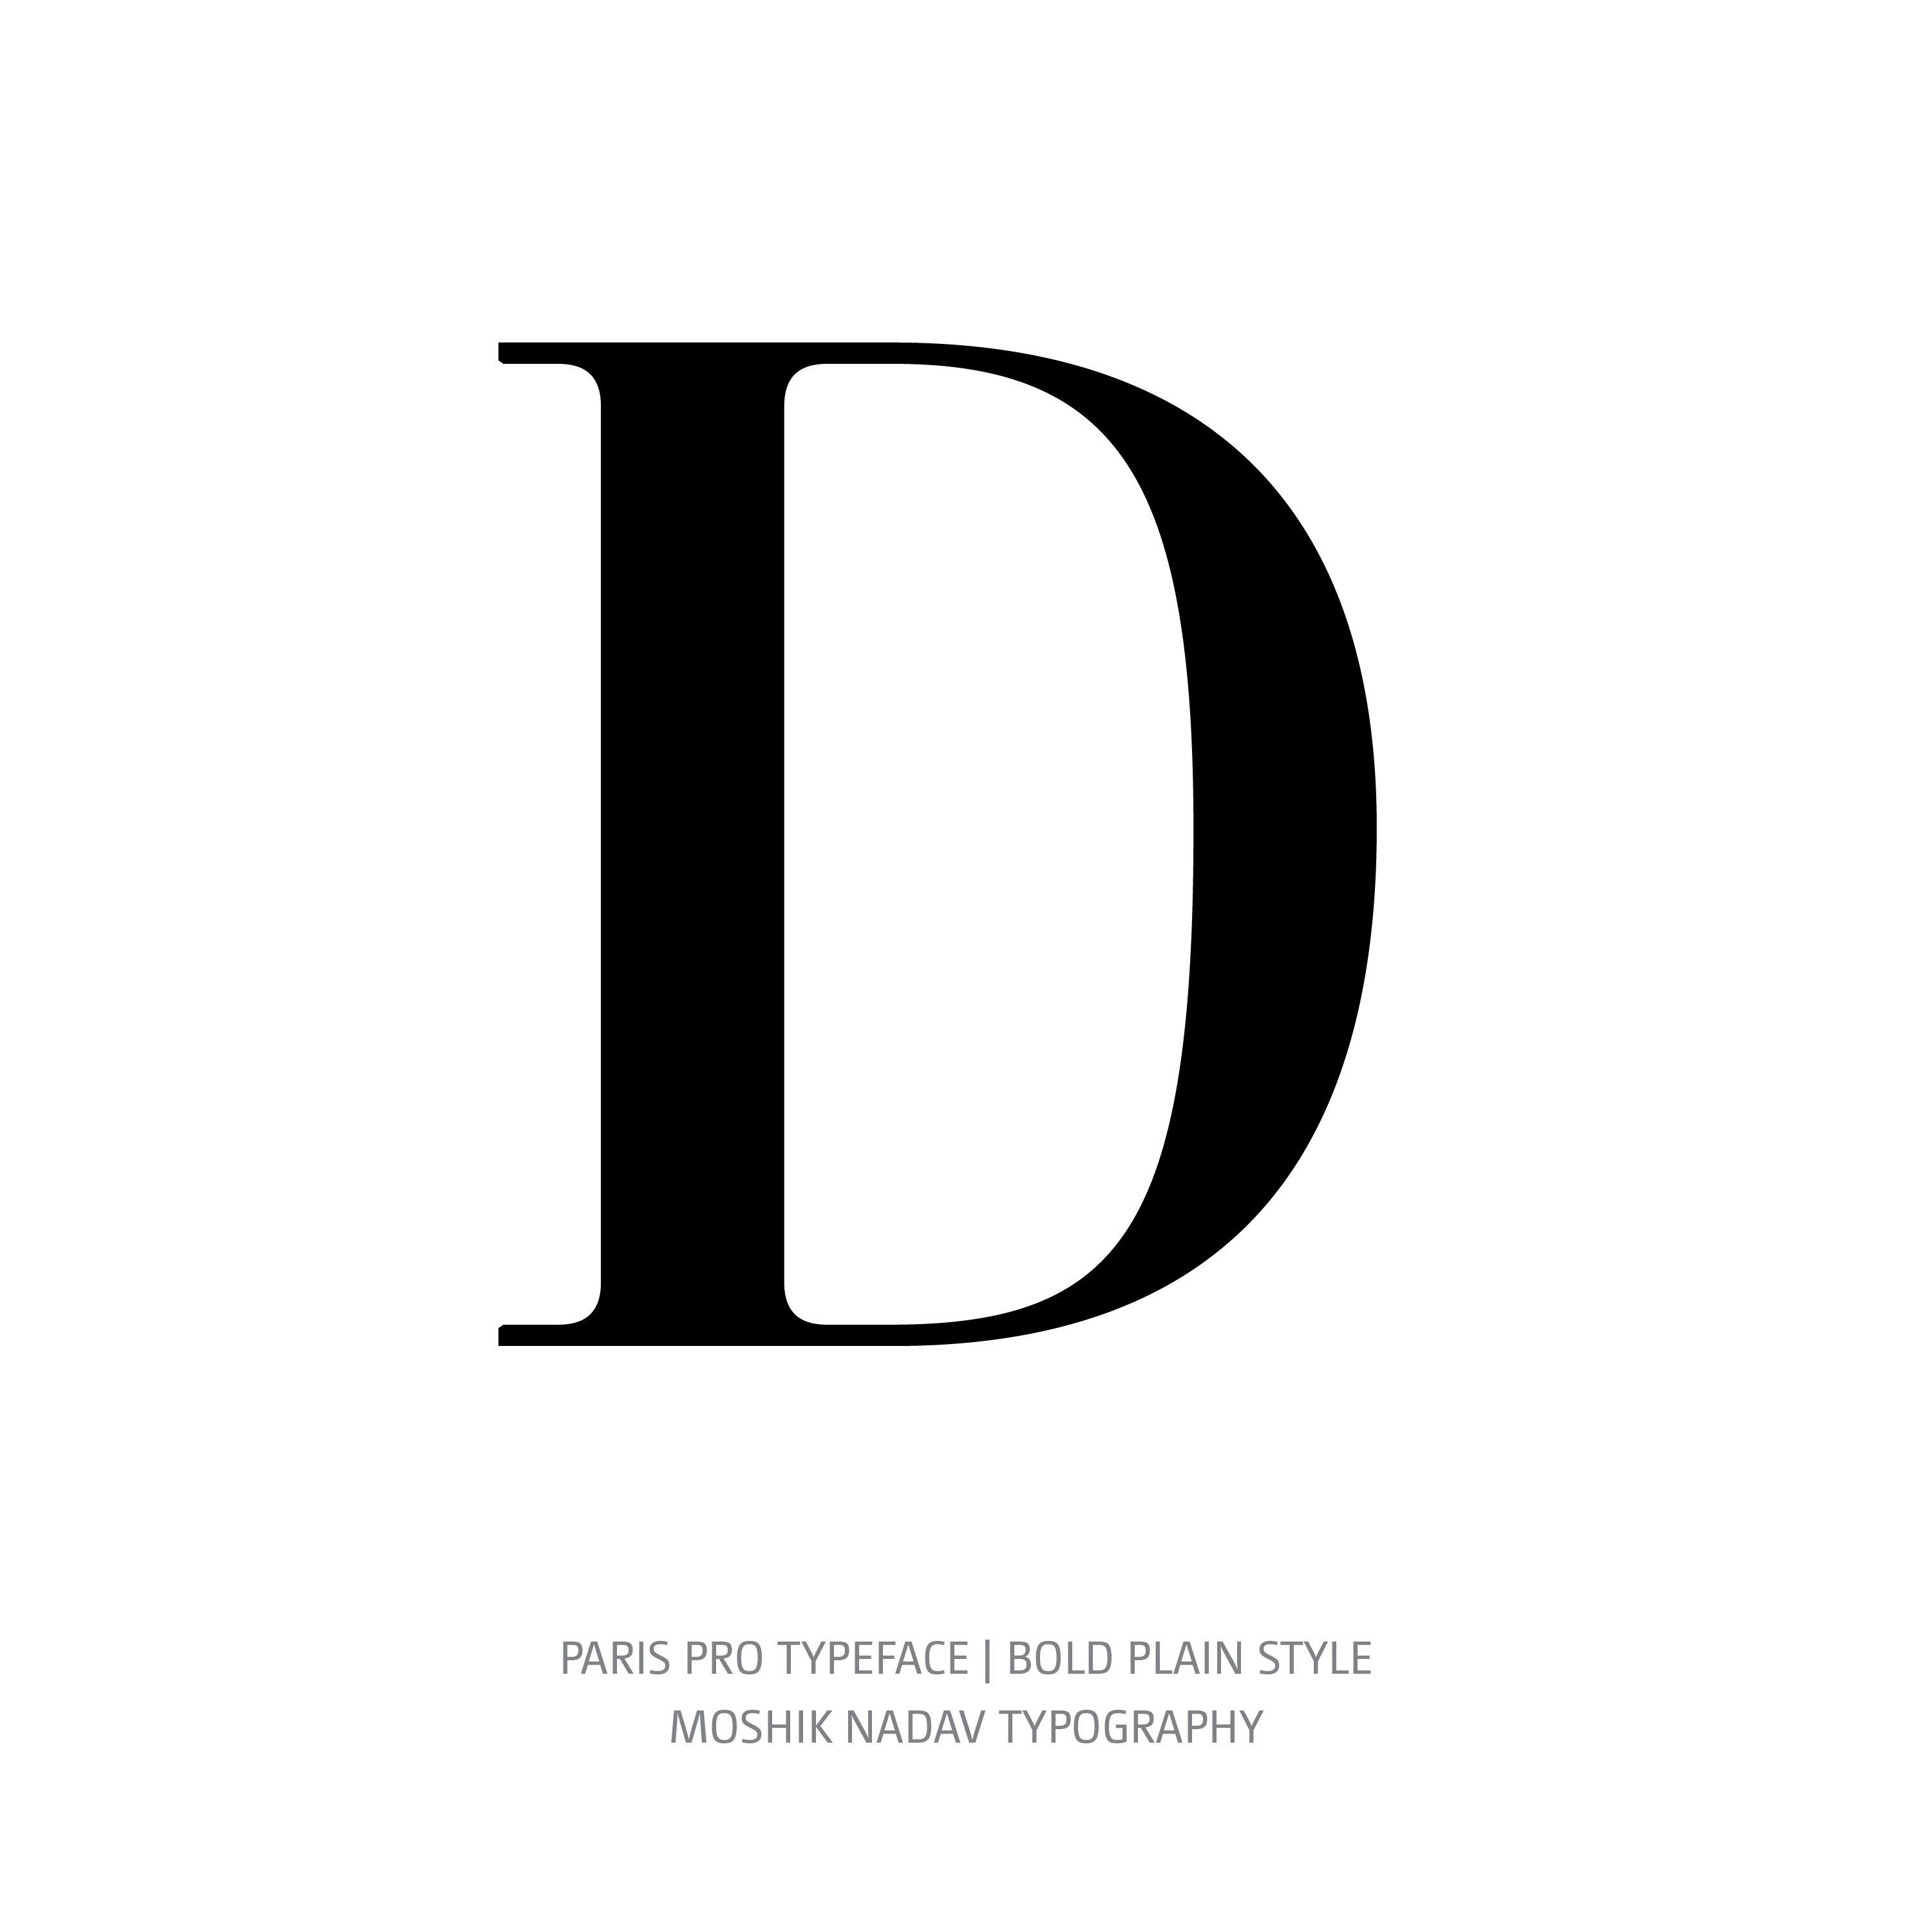 Paris Pro Typeface Bold Plain D